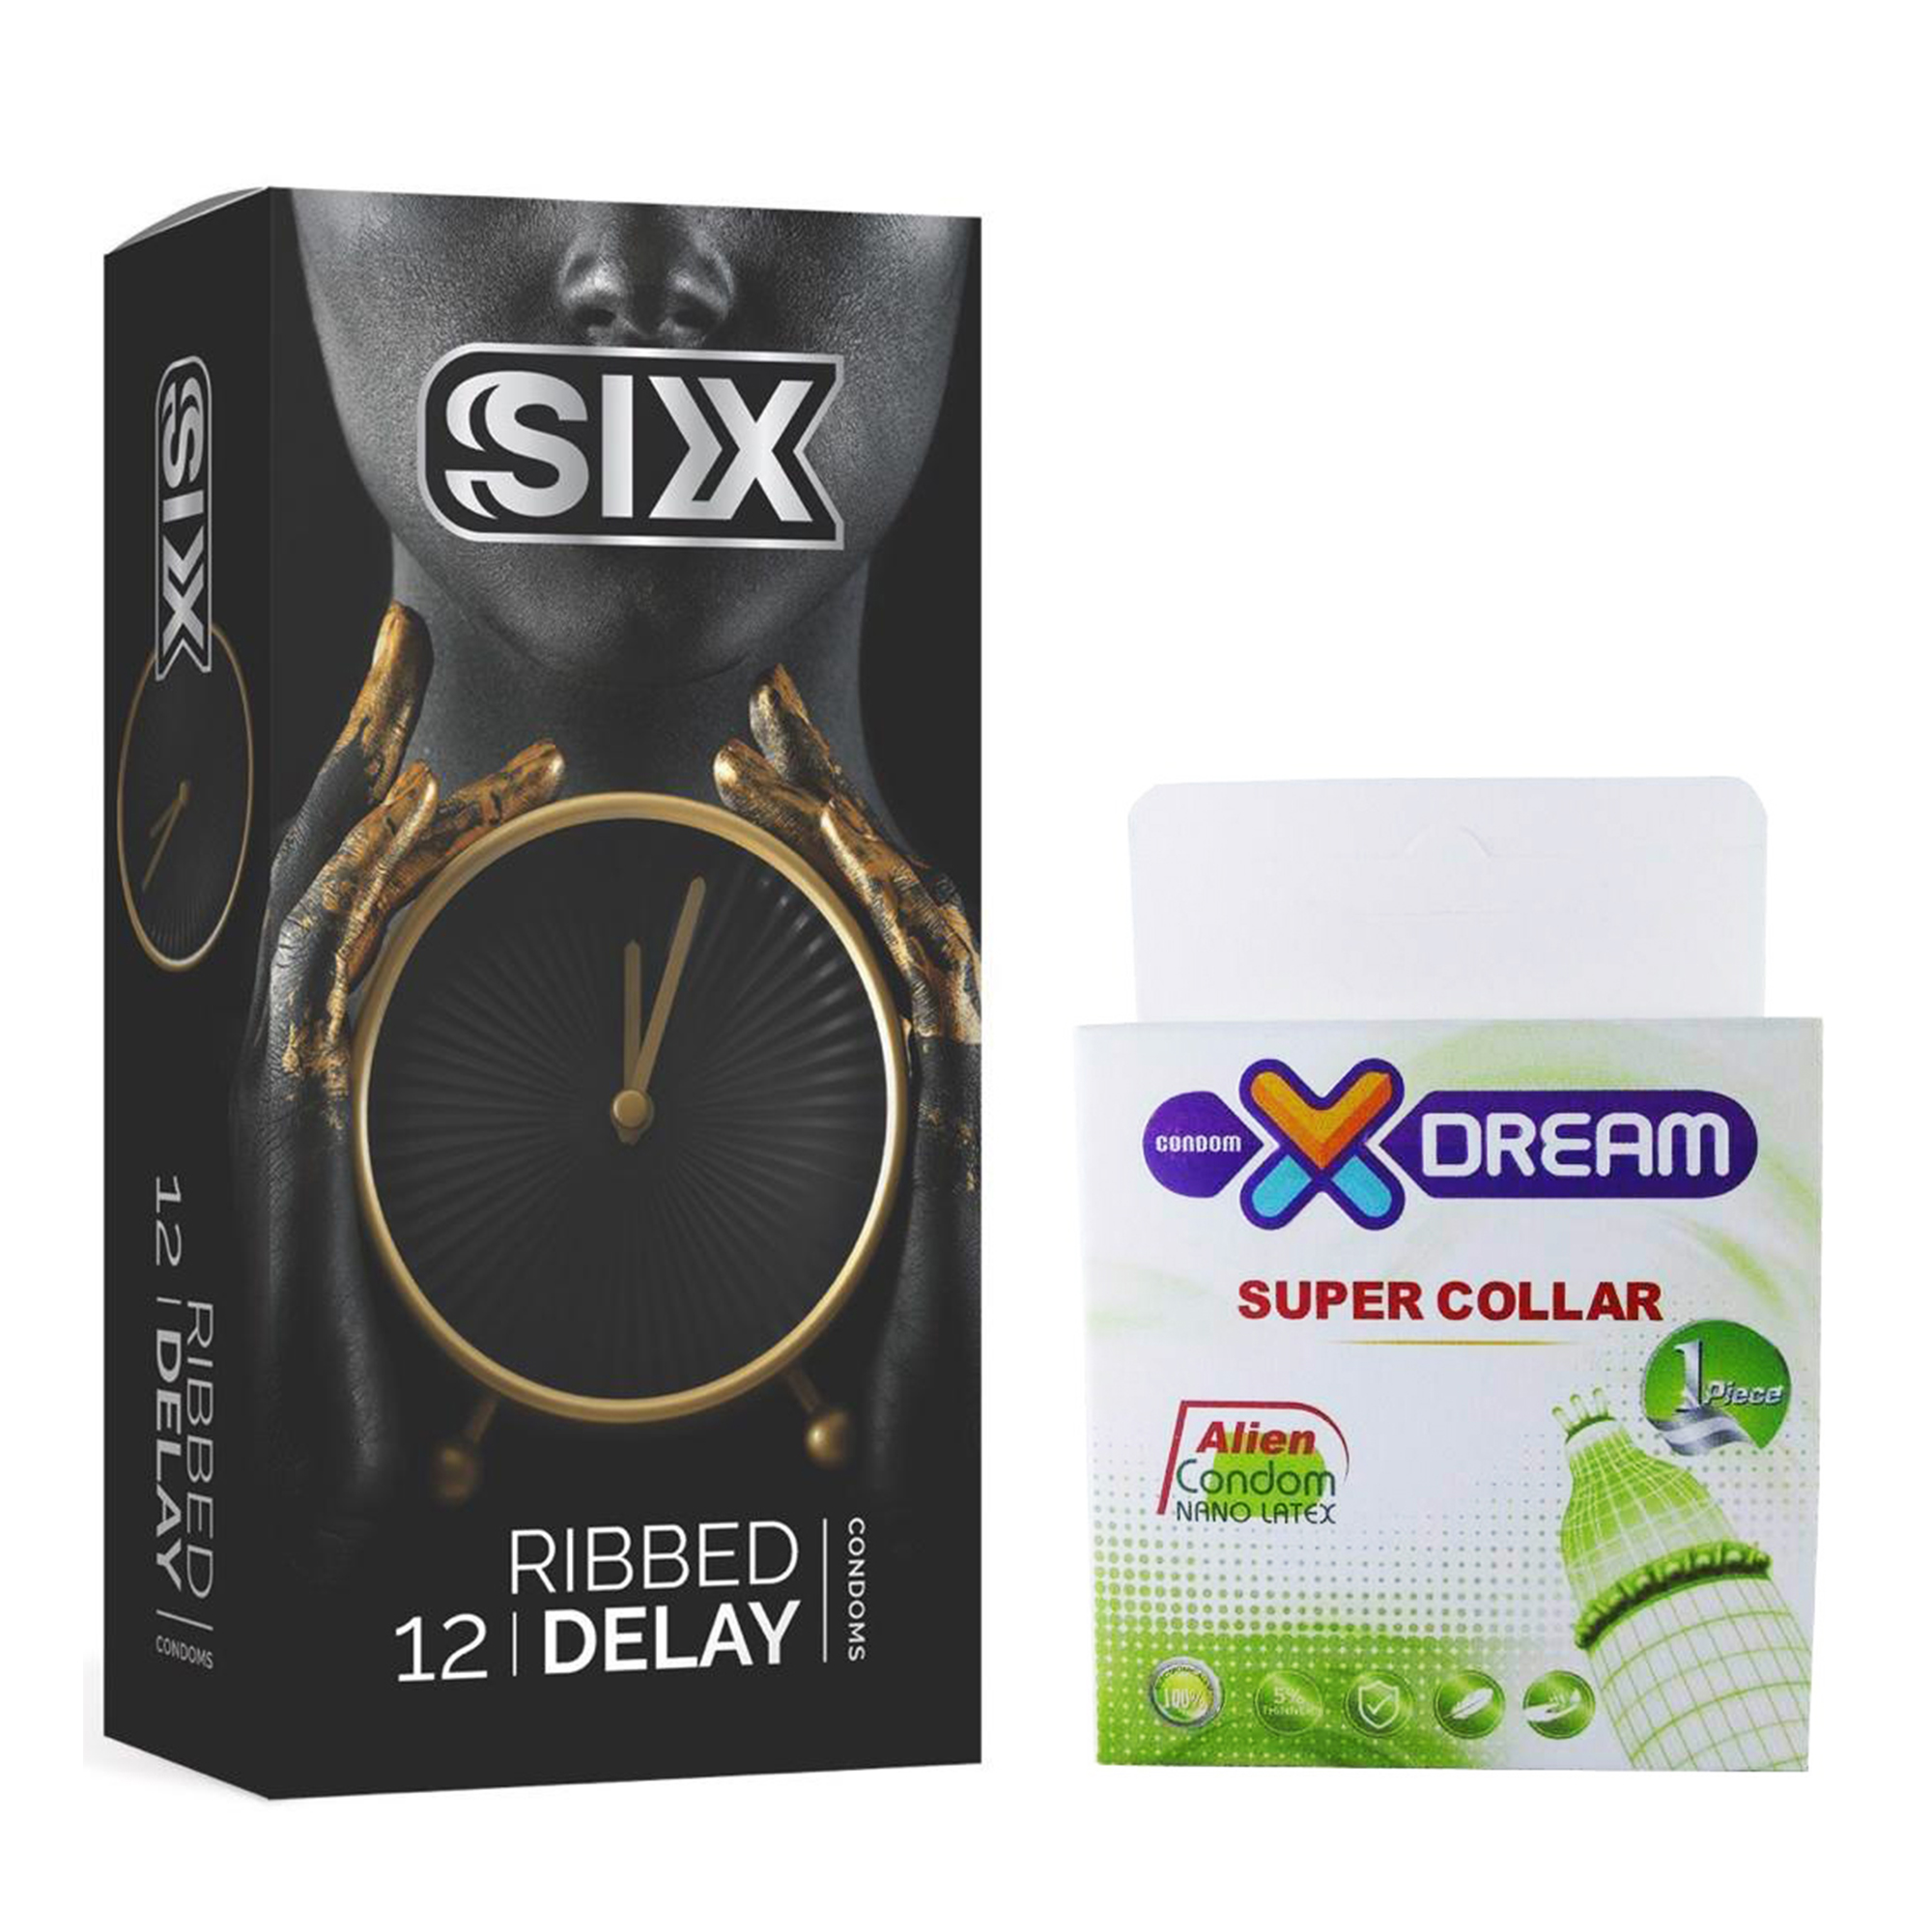 کاندوم سیکس مدل Ribbed Delay بسته 12 عددی به همراه کاندوم ایکس دریم مدل Super Collar